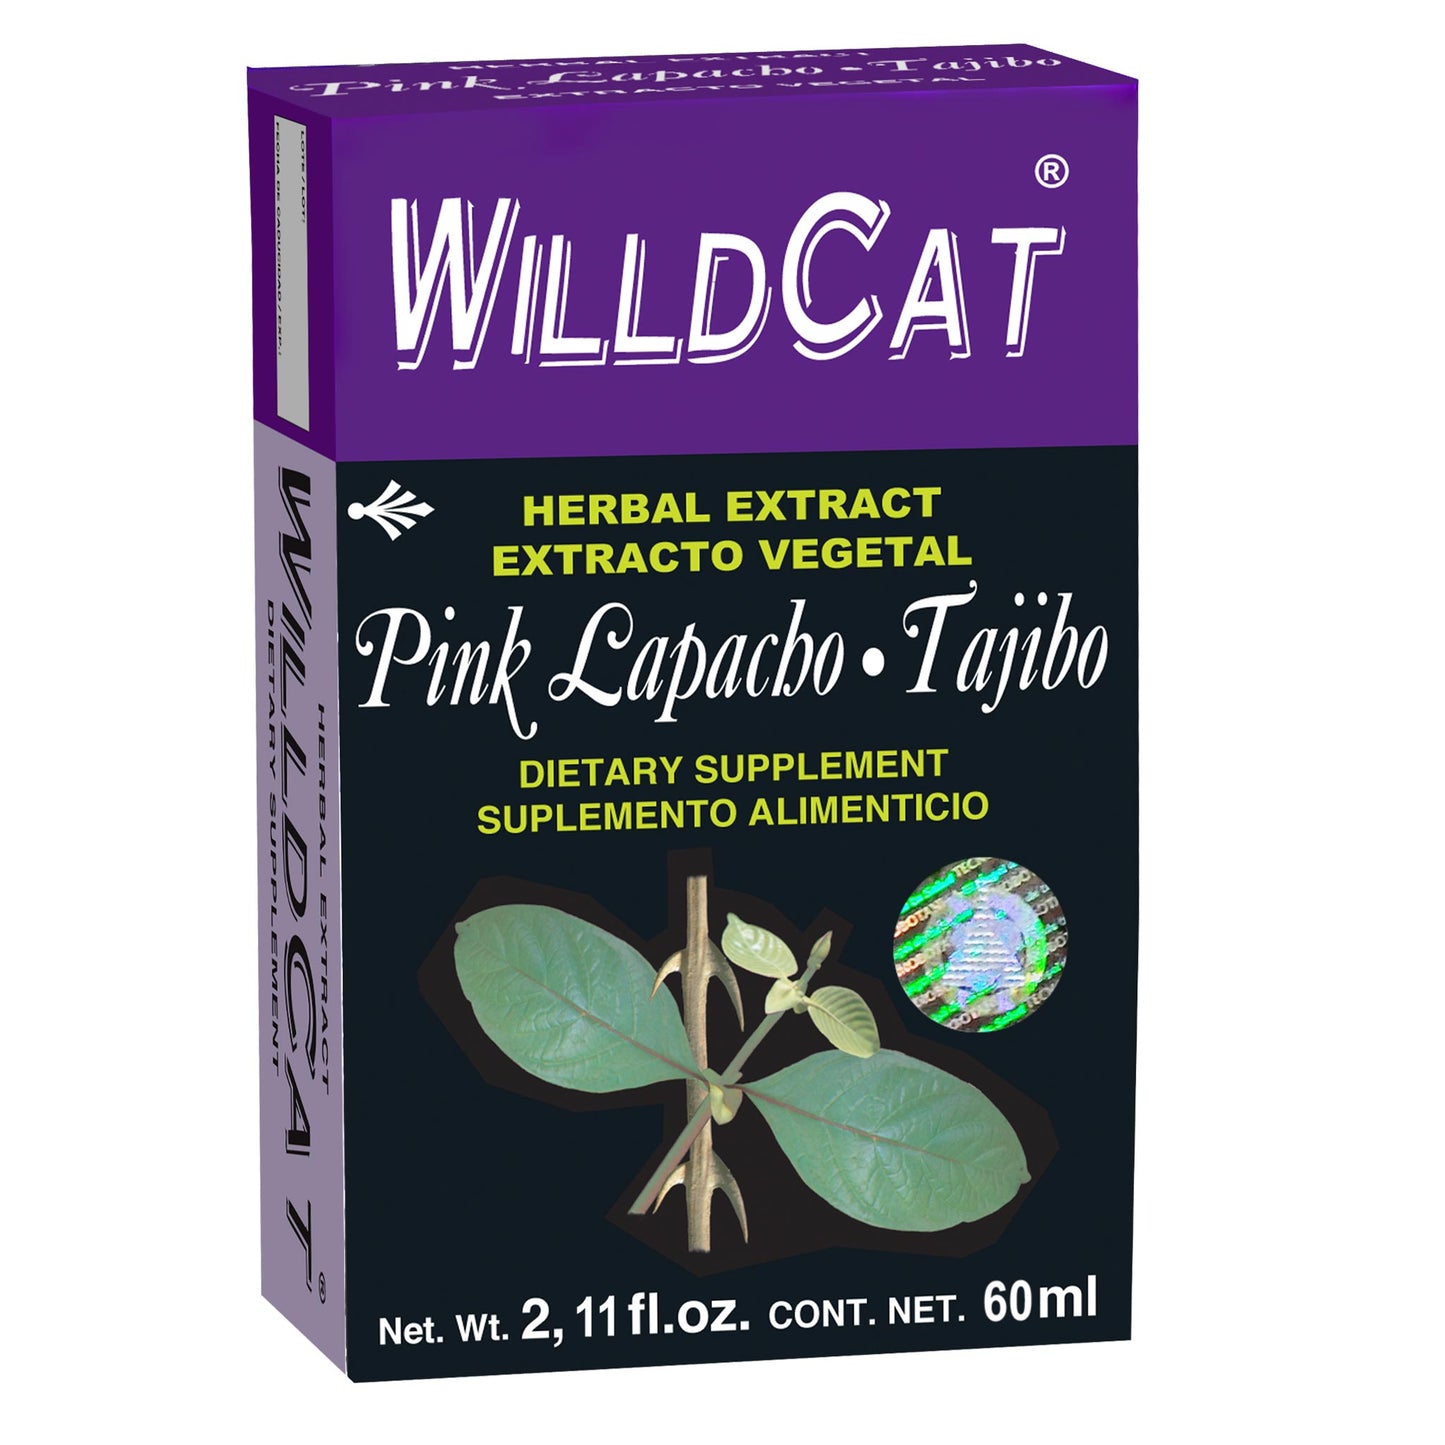 WILLDCAT ® extracto vegetal 60ml